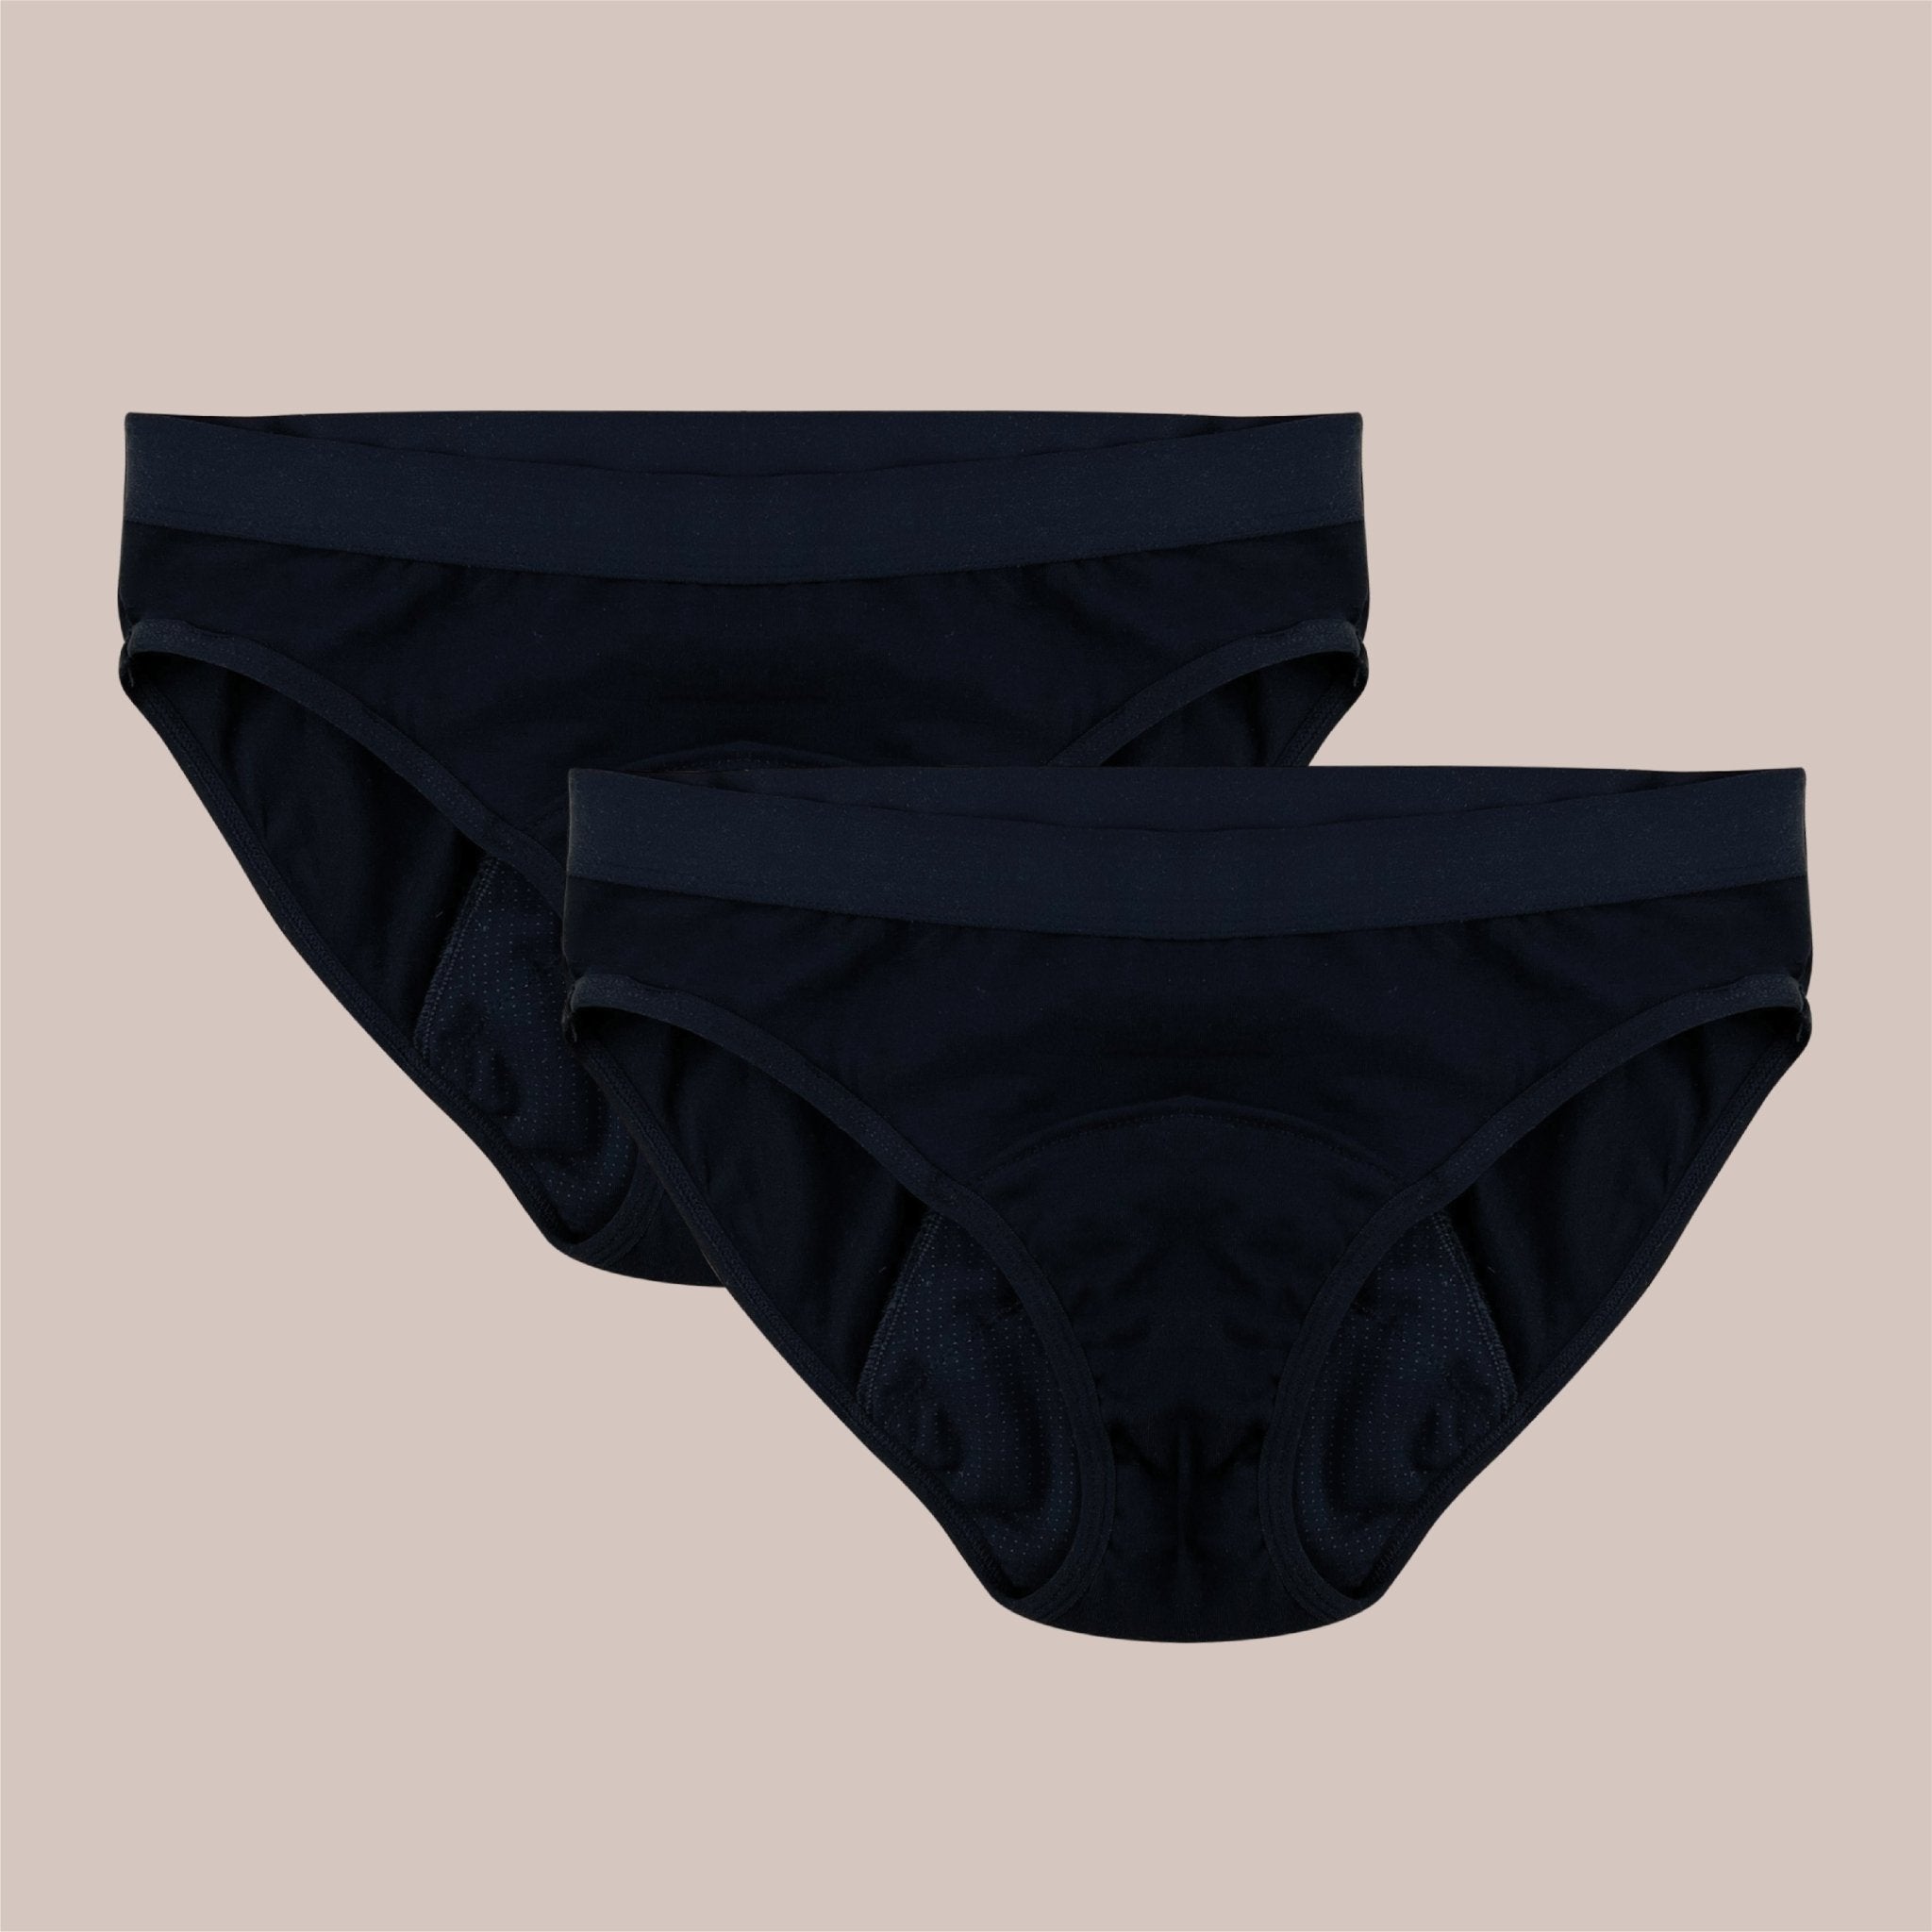 Period Underwear –